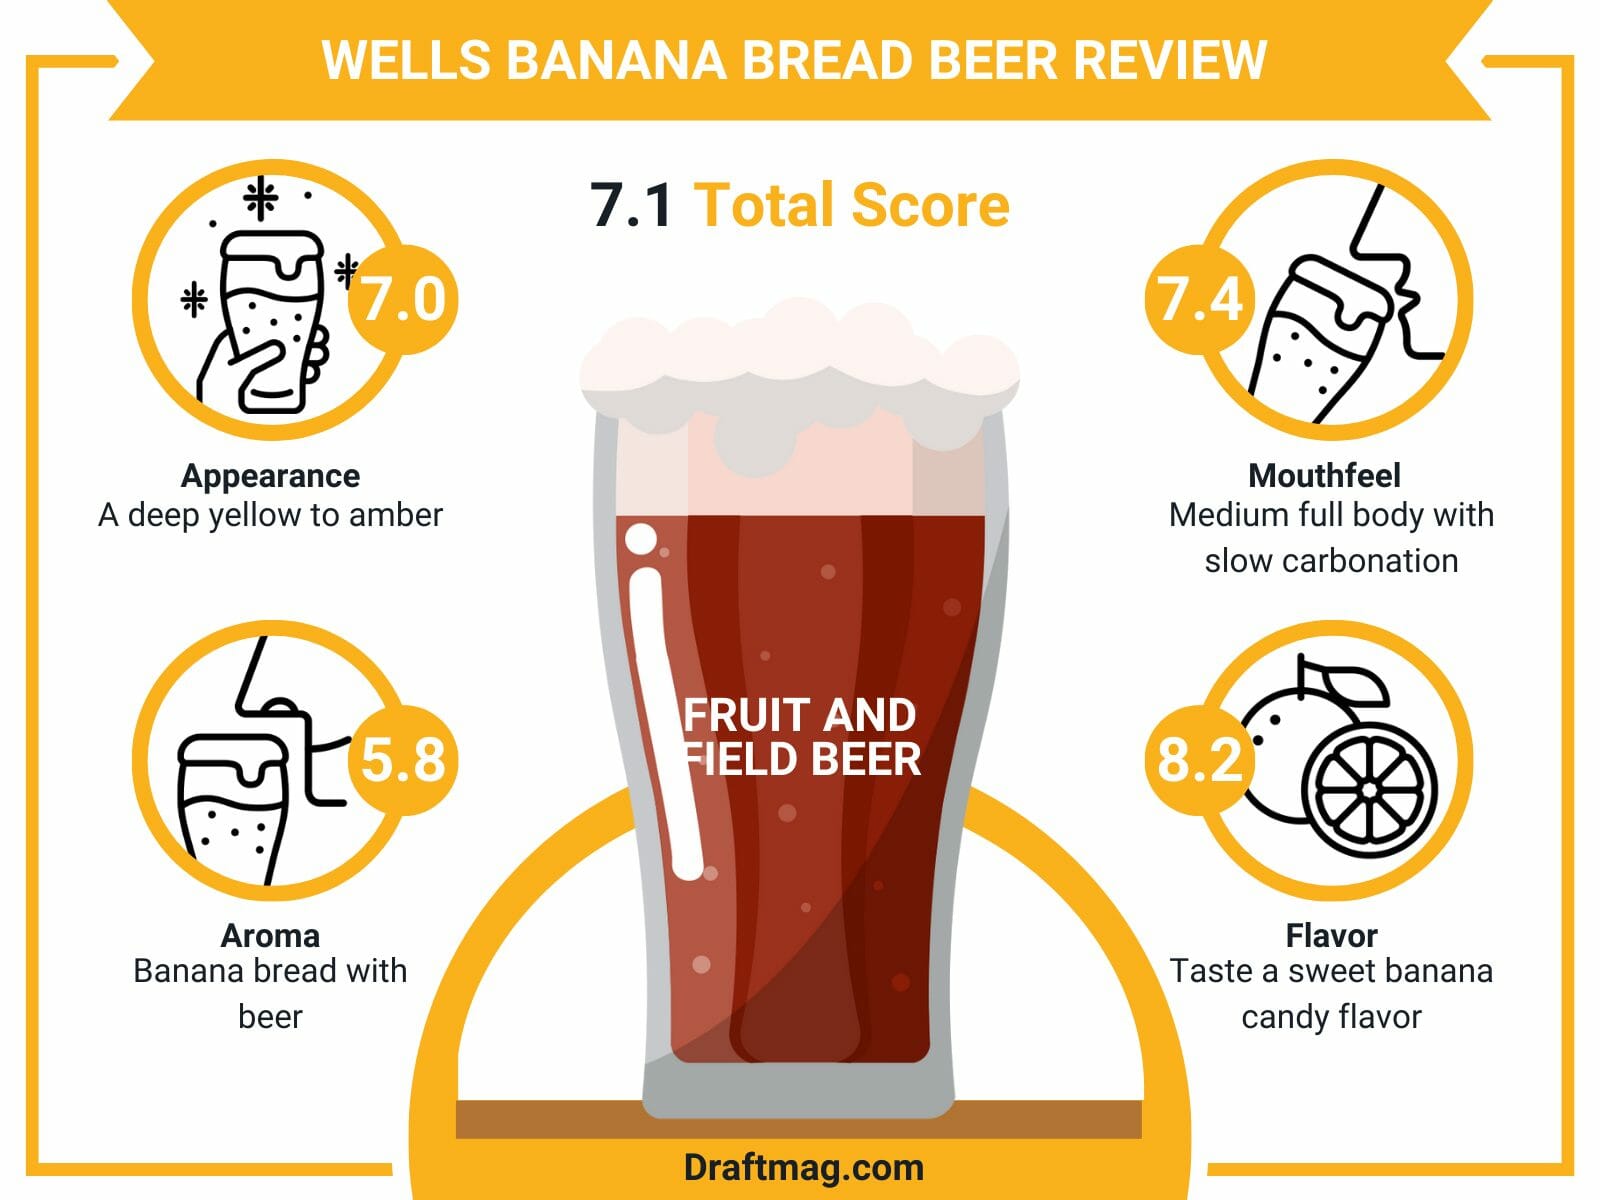 Wells banana bread beer review infographics